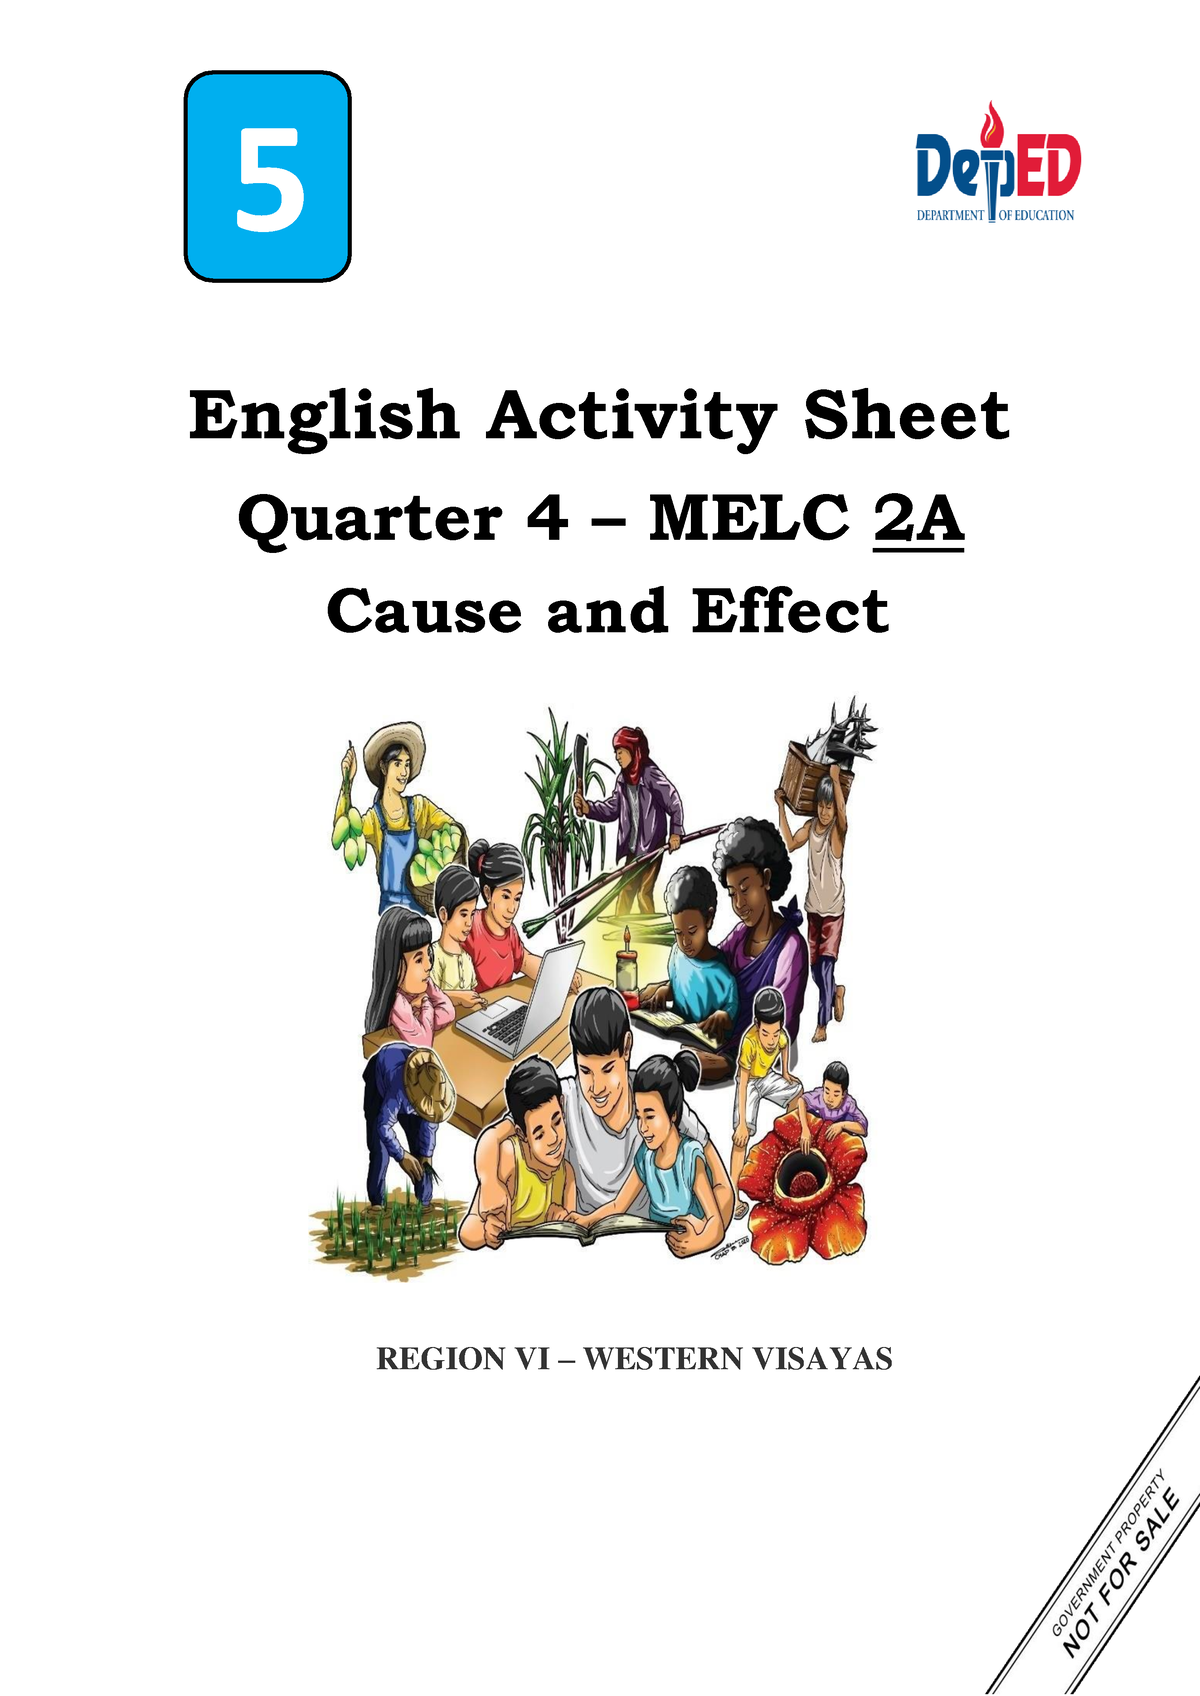 Las E5 Q4 Melc 2a Cause And Effect English Activity Sheet Quarter 4 Melc 2a Region Vi 1328